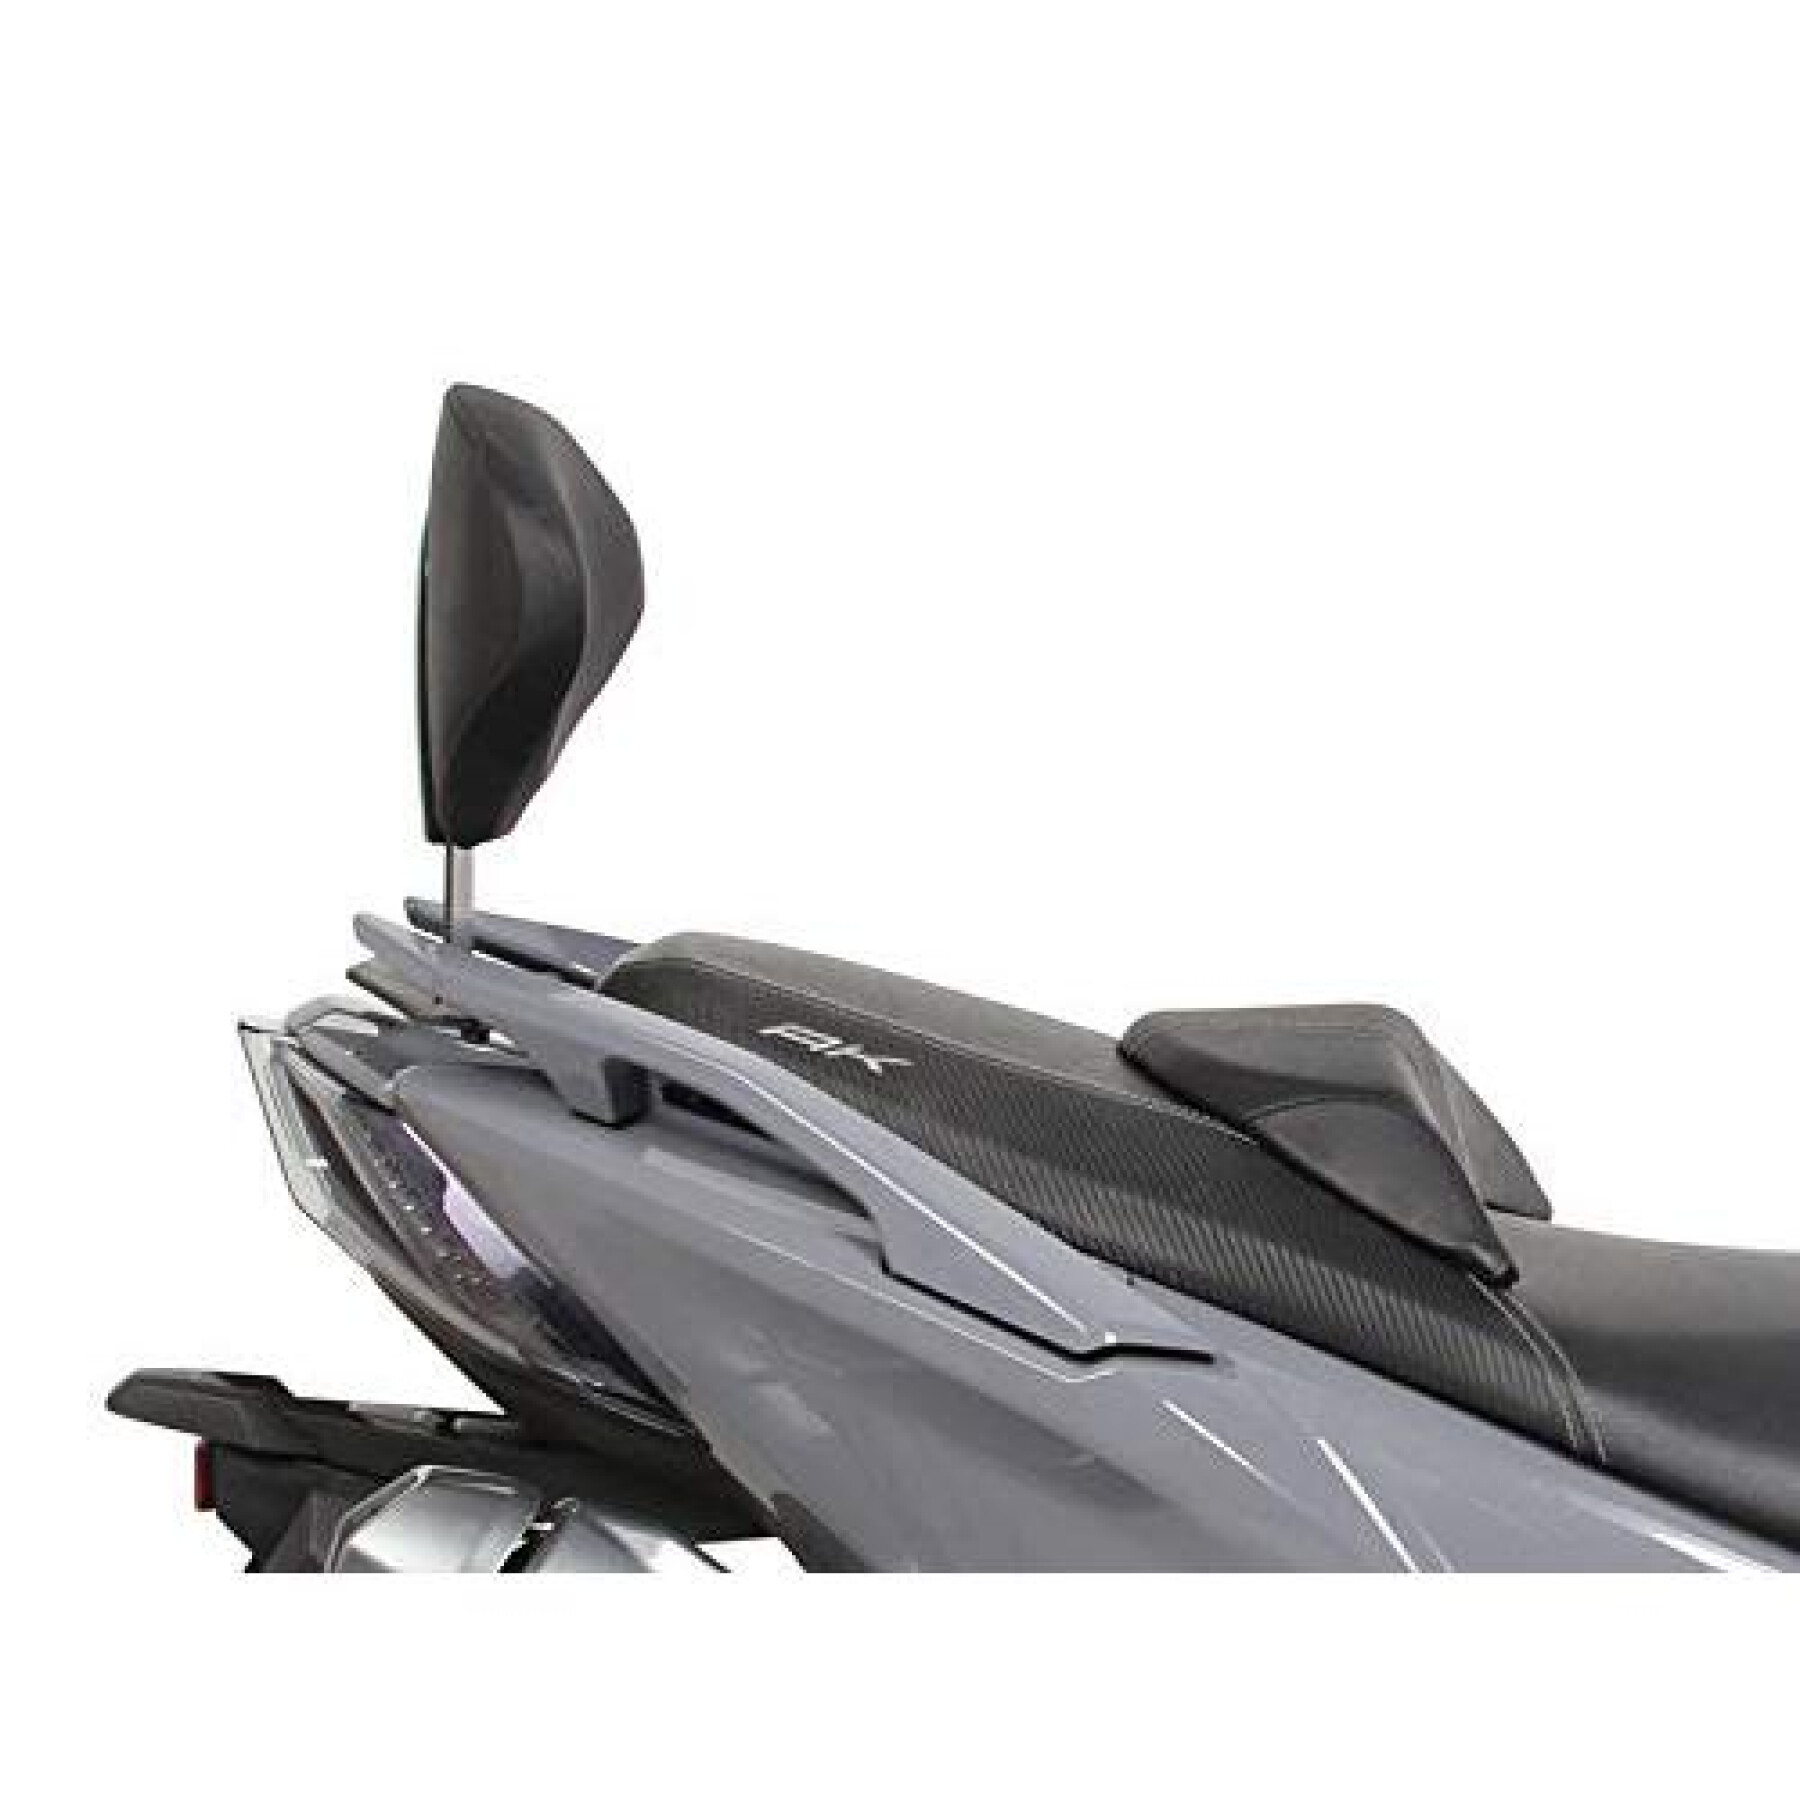 Fijación del respaldo del scooter Shad Kymco ak 550